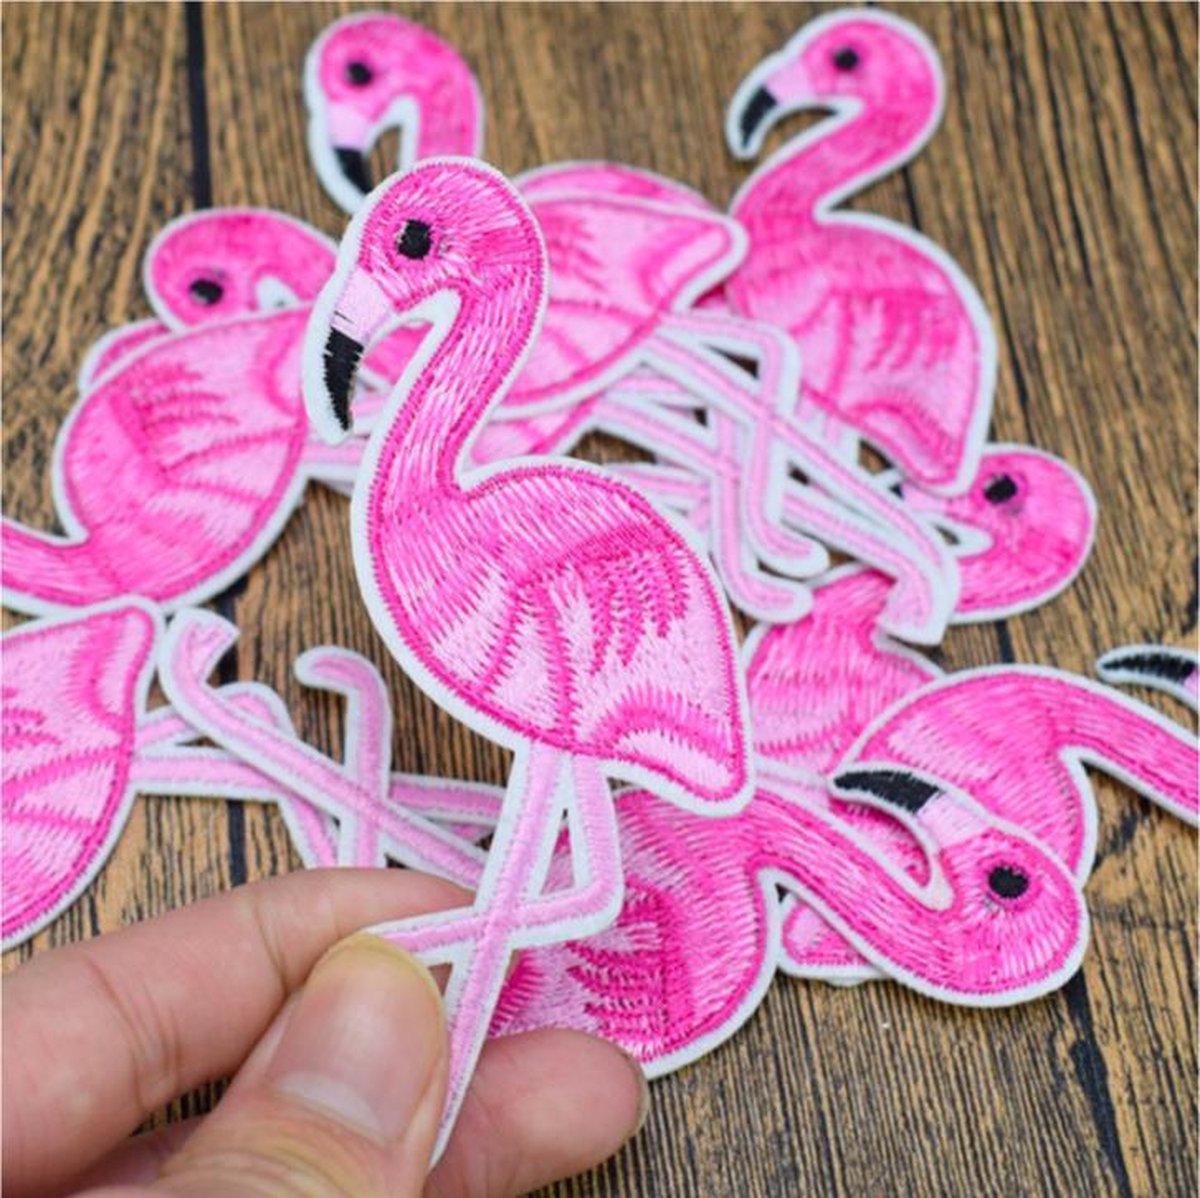 ProductGoods - 10x Leuke flamingo Patch voor op kleding | bol.com